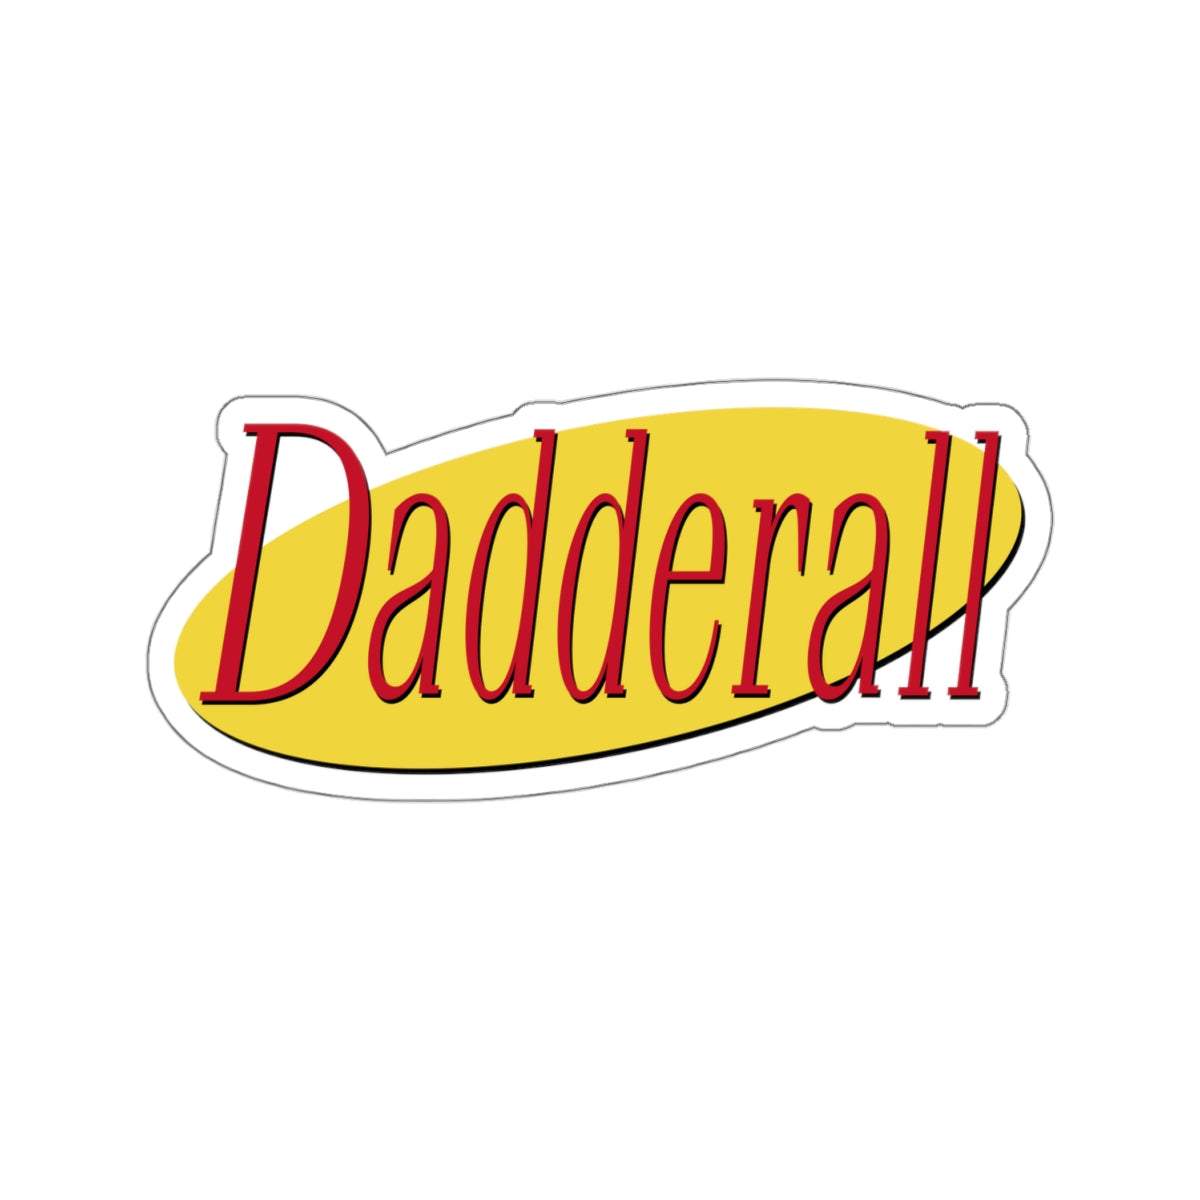 Daddfeld Sticker